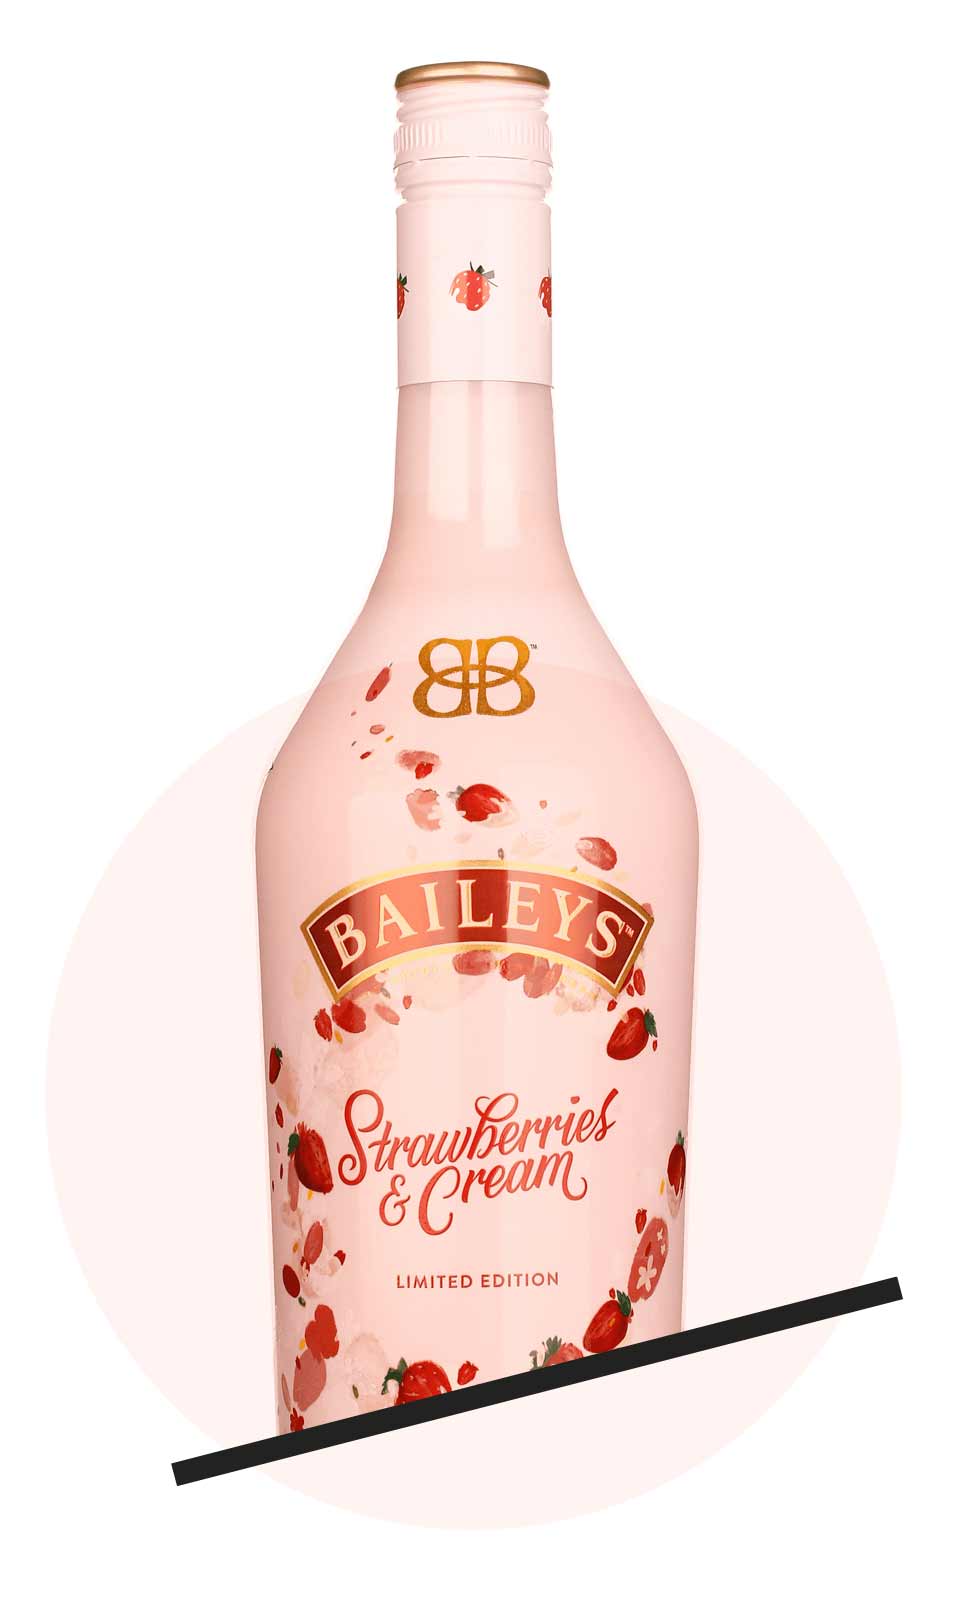 Baileys Strawberry & Cream | Verkostungsrunde Spirituosen April 2019 | Mixology Magazin für Barkultur